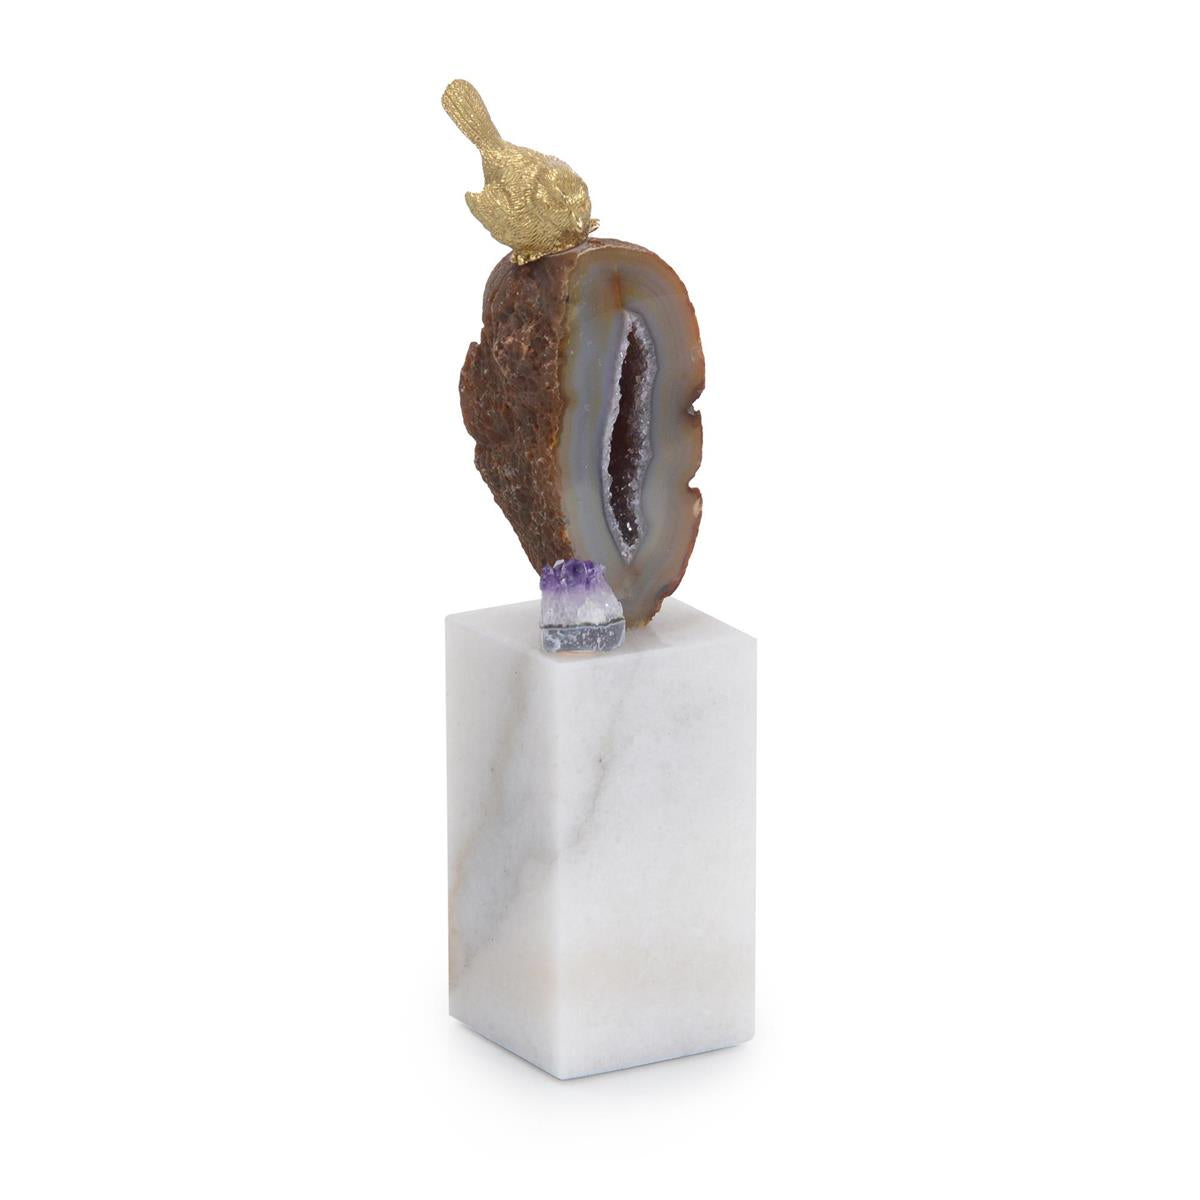 Brass Bird and Geode Sculpture-John Richard-JR-JRA-13147-Decorative ObjectsI-1-France and Son